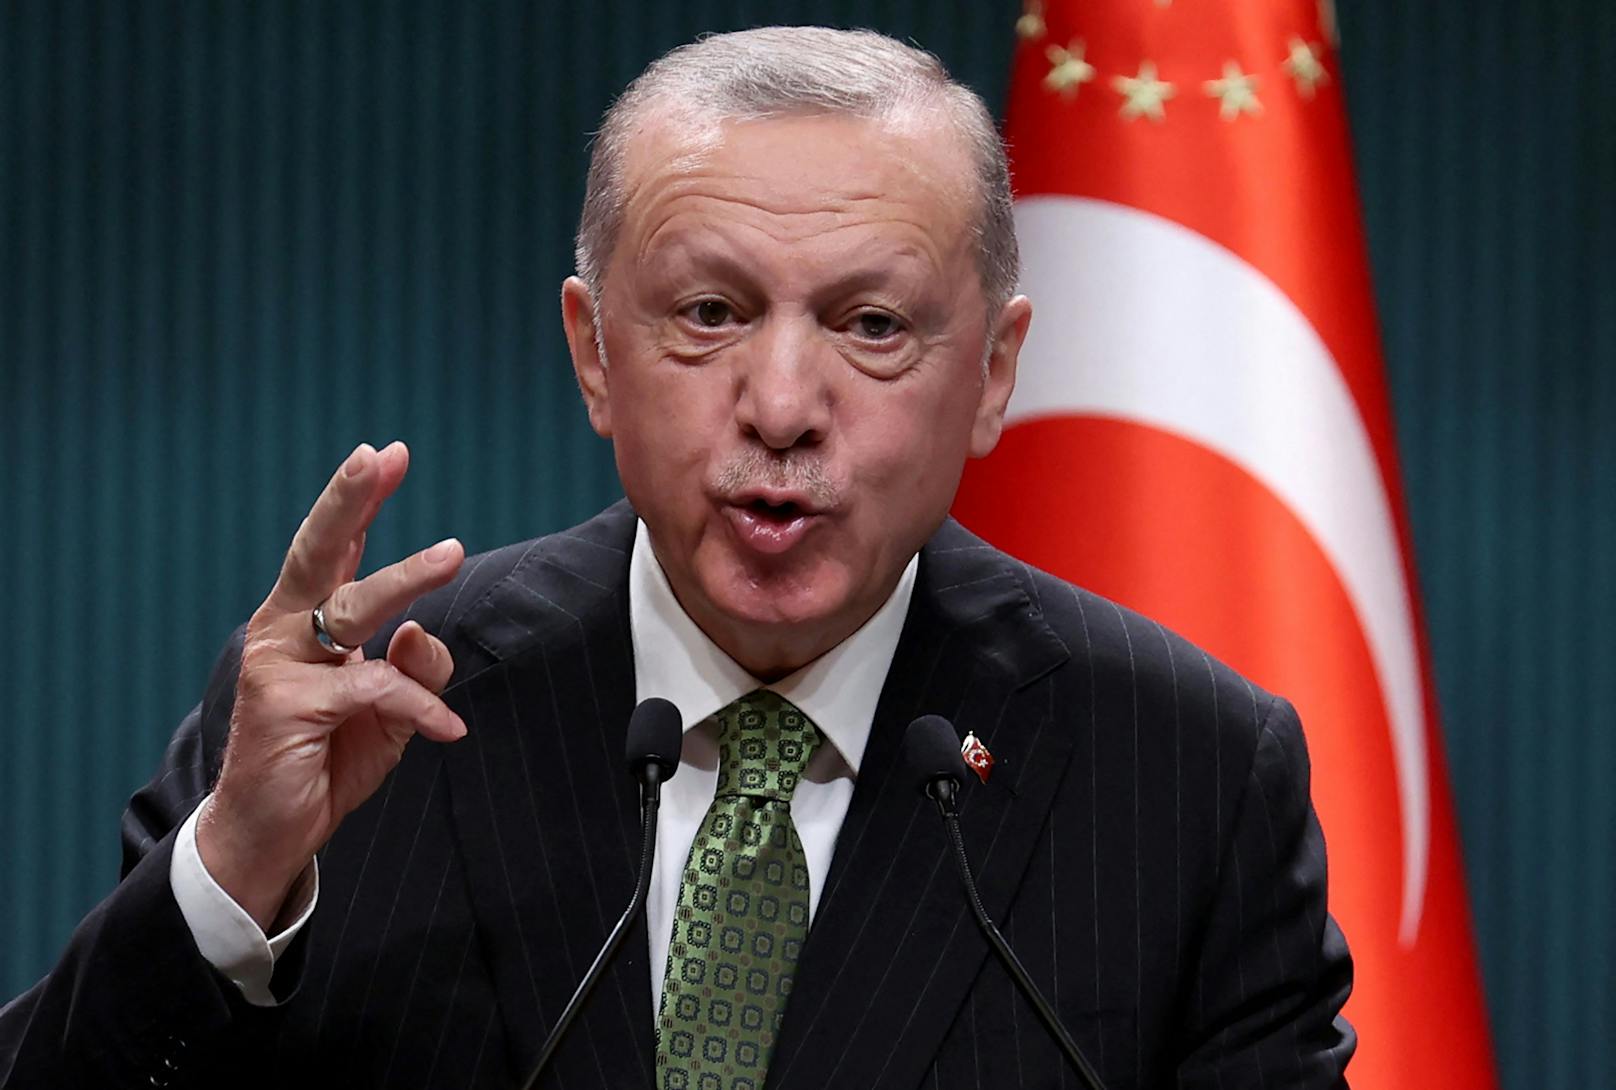 "Werdet hohen Preis zahlen": Erdogan platzt der Kragen